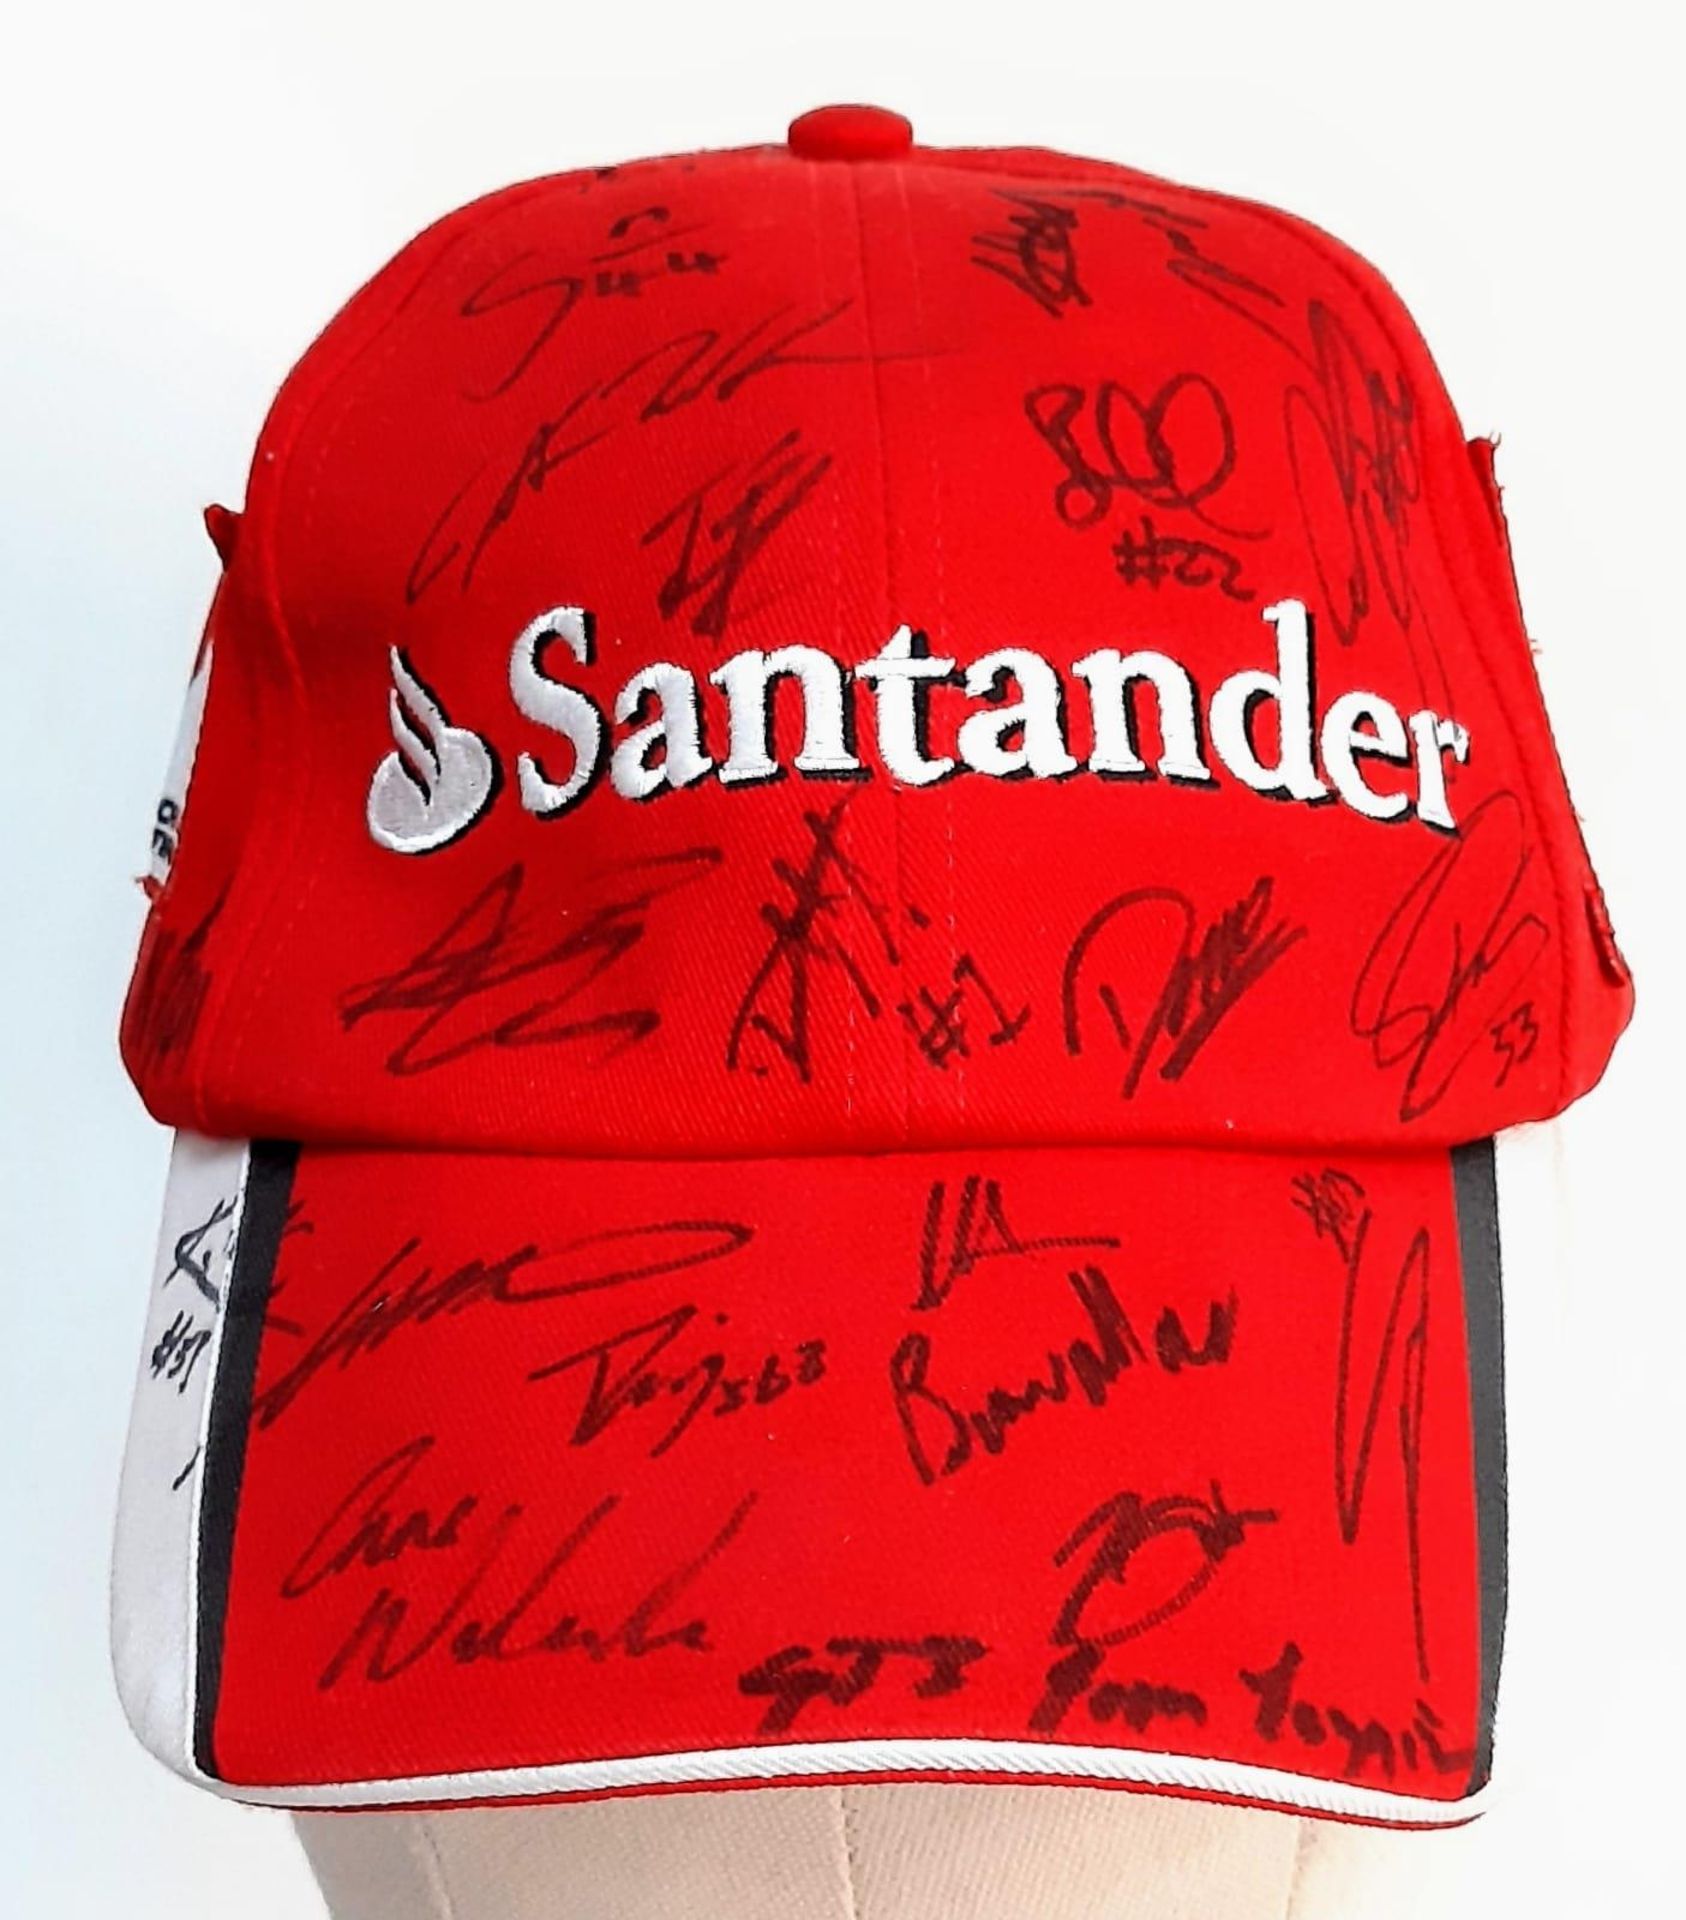 An Official Ferrari Team Cap - Over 20 signatures including Ferrari drivers and team principals.